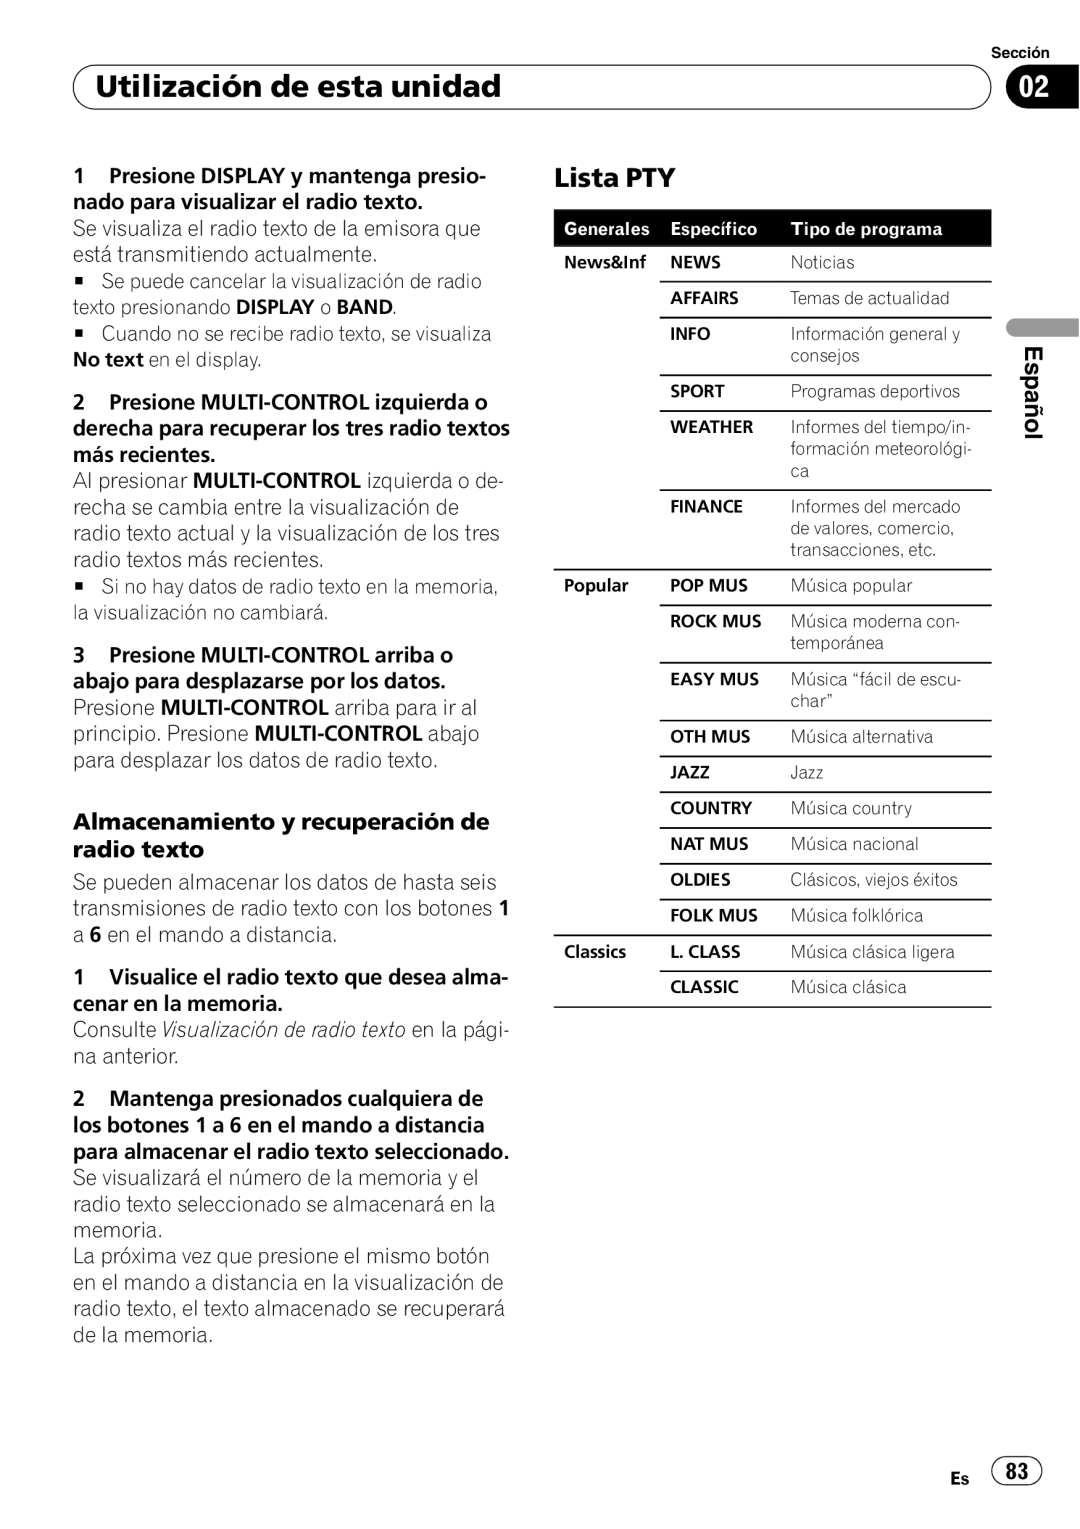 Pioneer DEH-P7900UB Lista PTY, Almacenamiento y recuperación de radio texto, Utilización de esta unidad, Español 